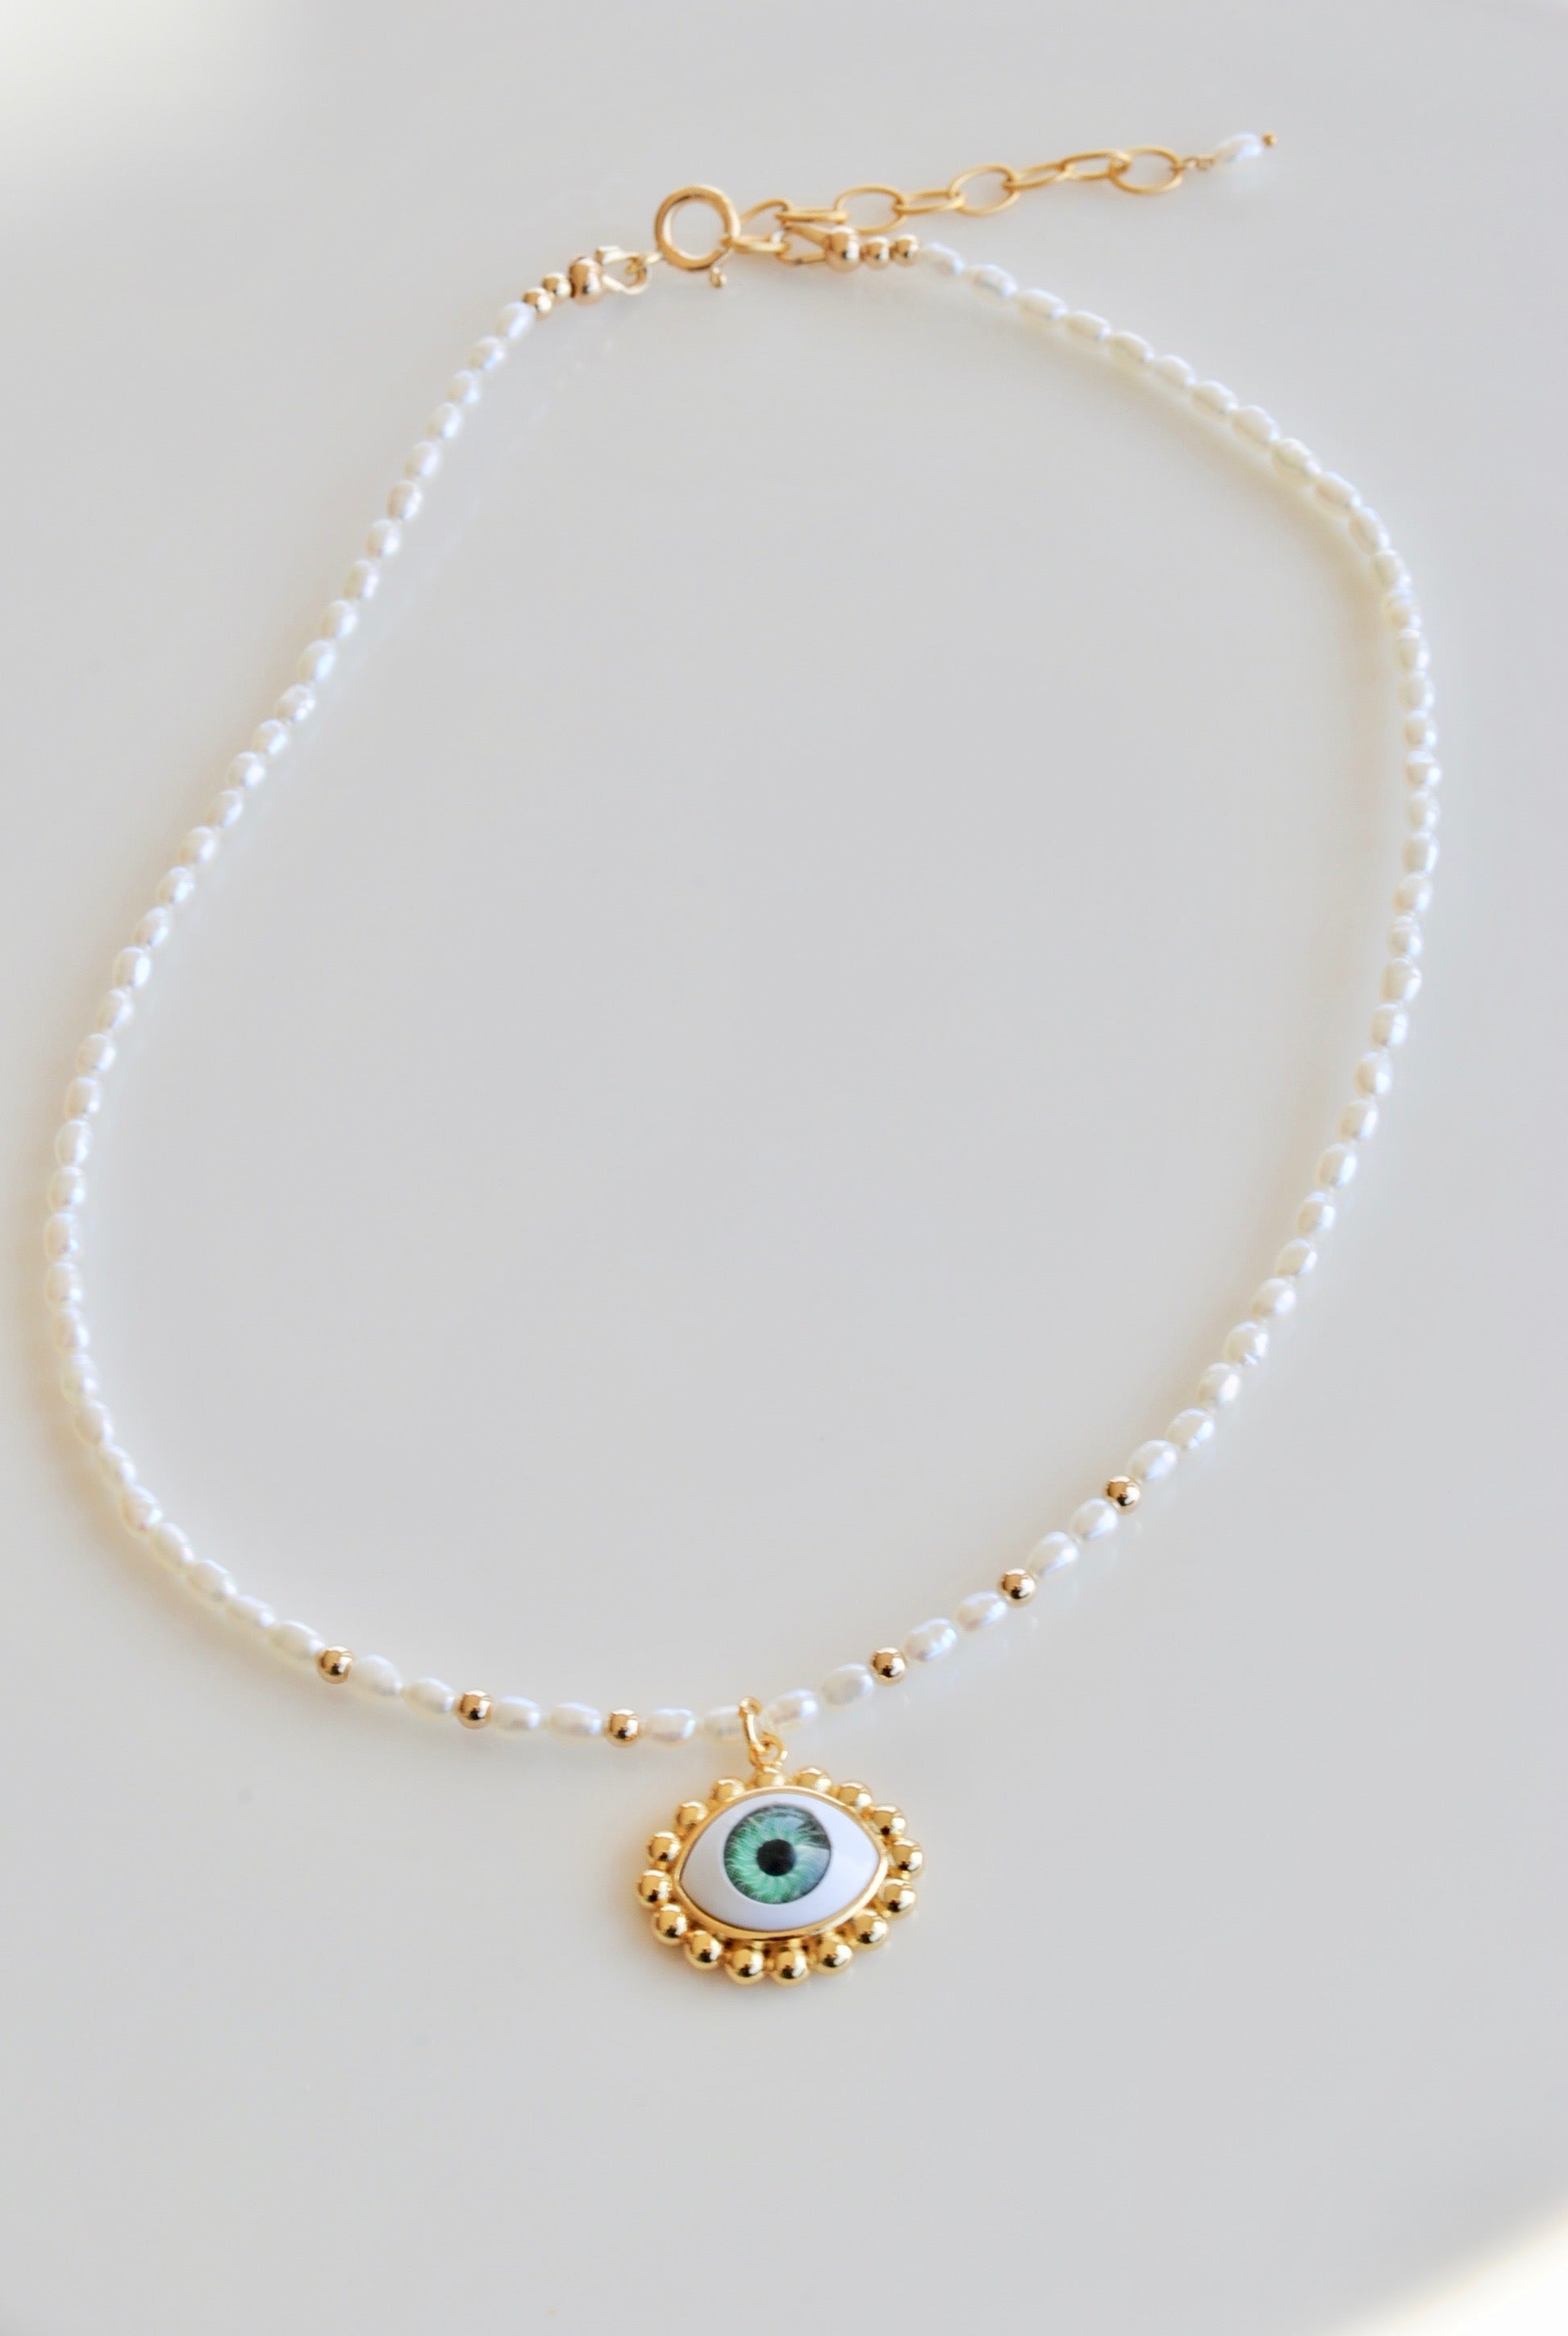 Eye Pendant Necklace - 2 Colors